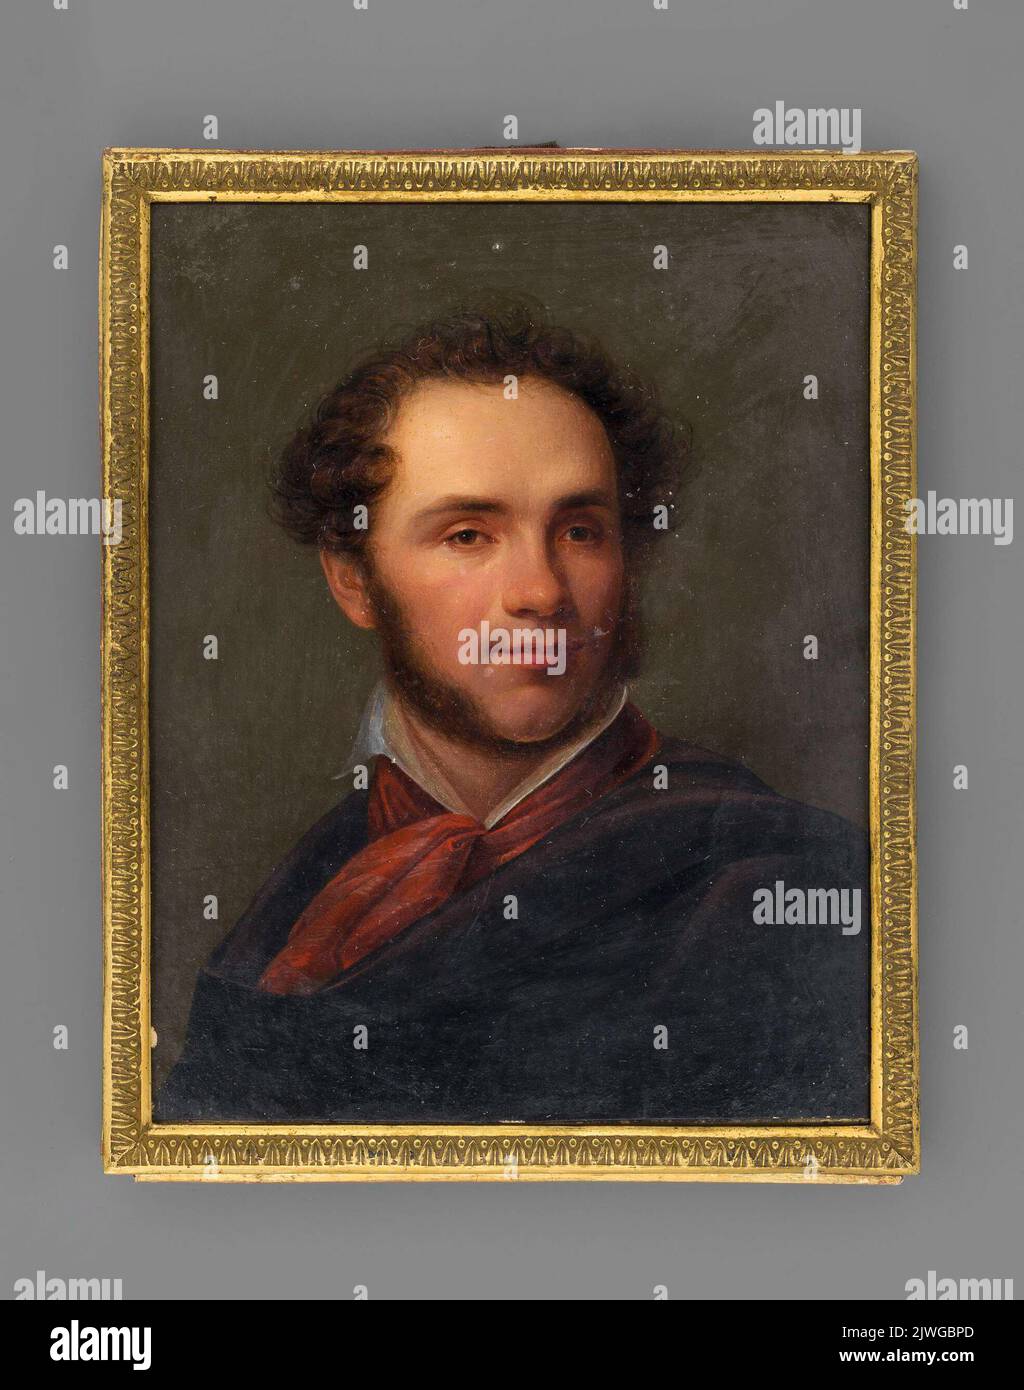 Popiersie mężczyzny, sławny artysta Aleksander Orłowski?. Bizański, Jan Nepomucen (1804-1878), painter Stock Photo